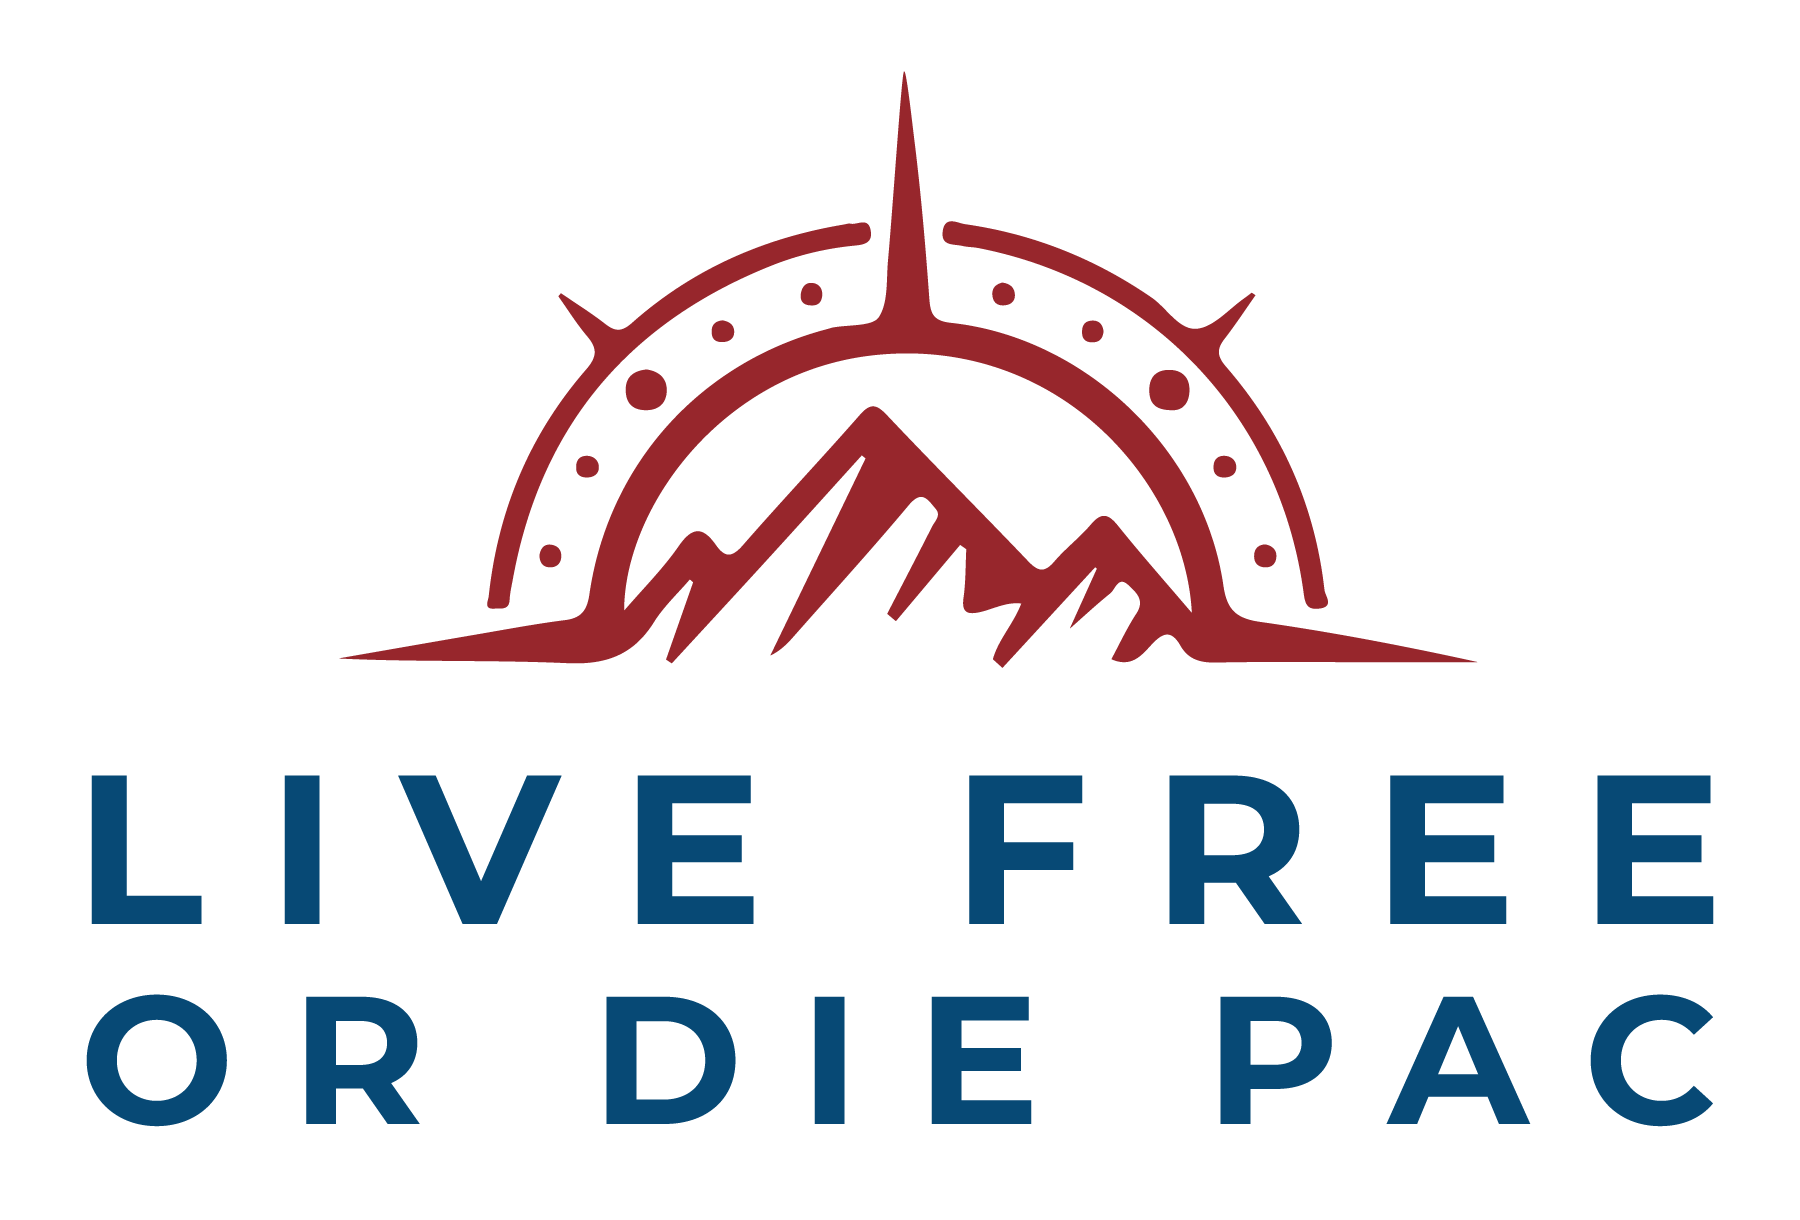 Live FREE or DIE PAC